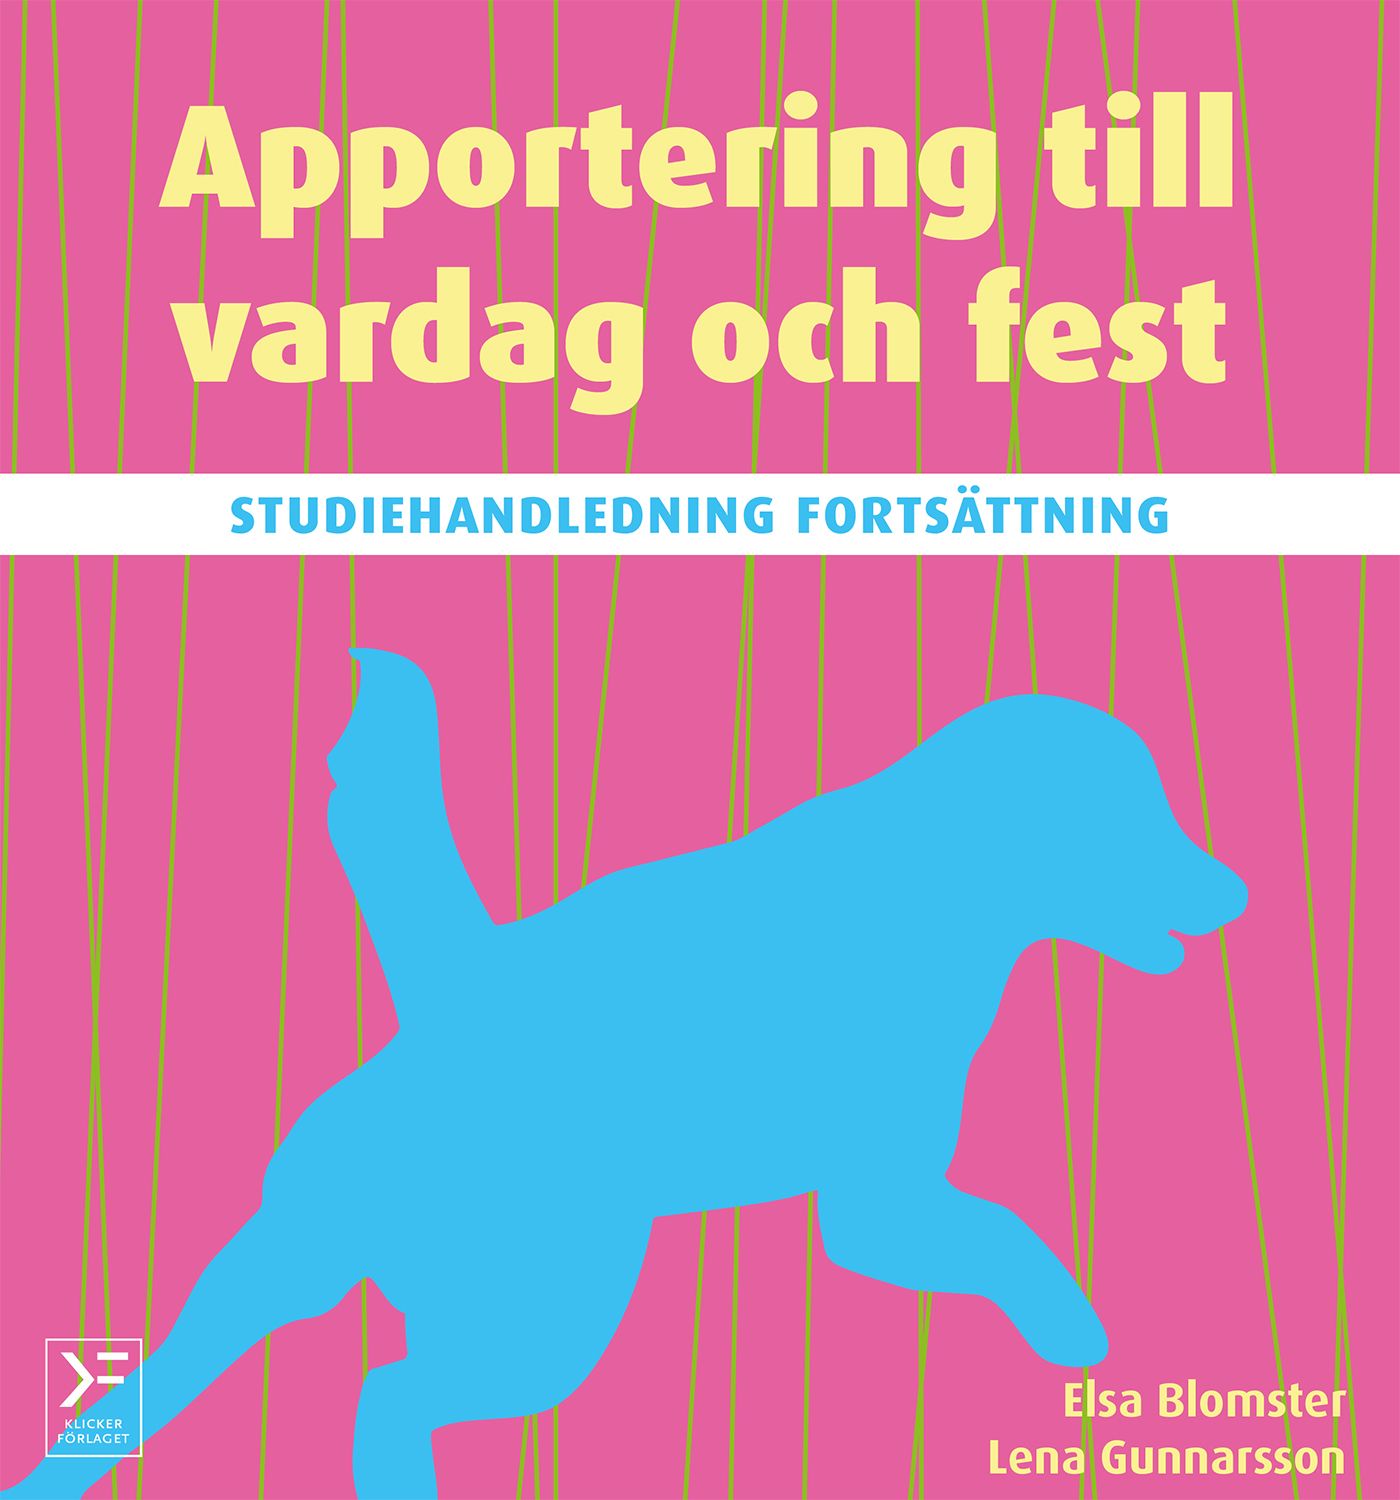 Apportering till vardag och fest : studiehandledning fortsättning, e-bok av Elsa Blomster, Lena Gunnarsson